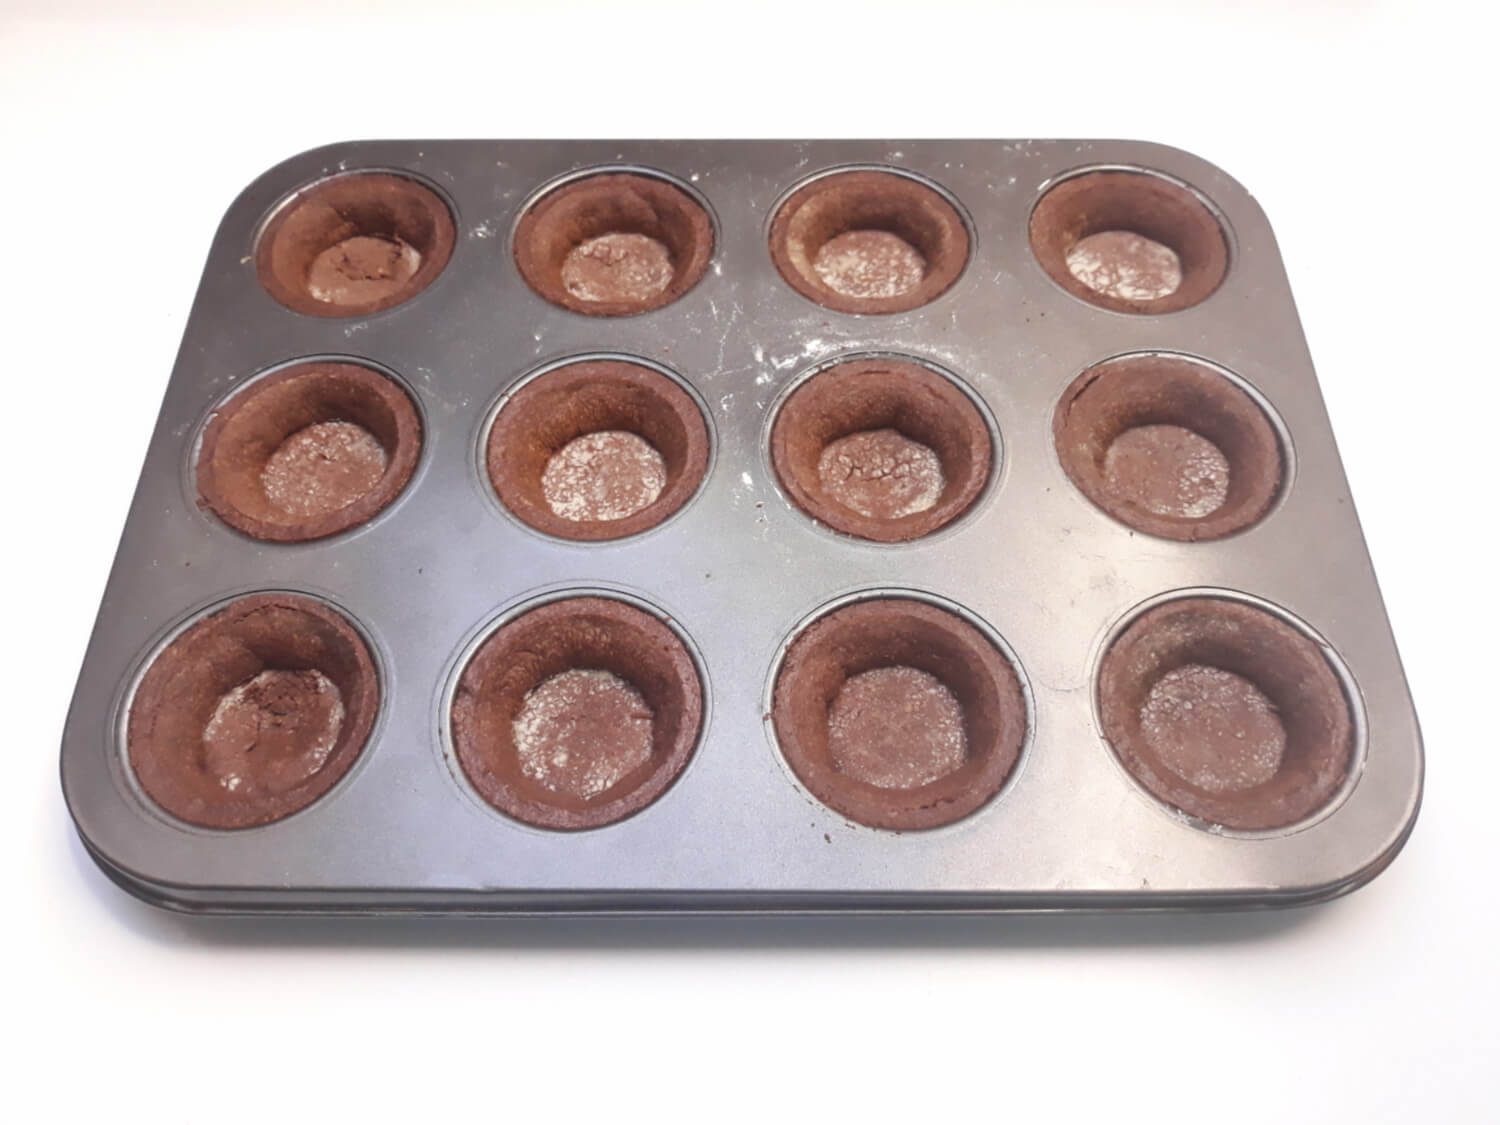 Rozpustne kruche mini tarty z solonym karmelem i czekoladą, tartaletki, upieczone kruche tartaletki kakaowe, forma na muffiny